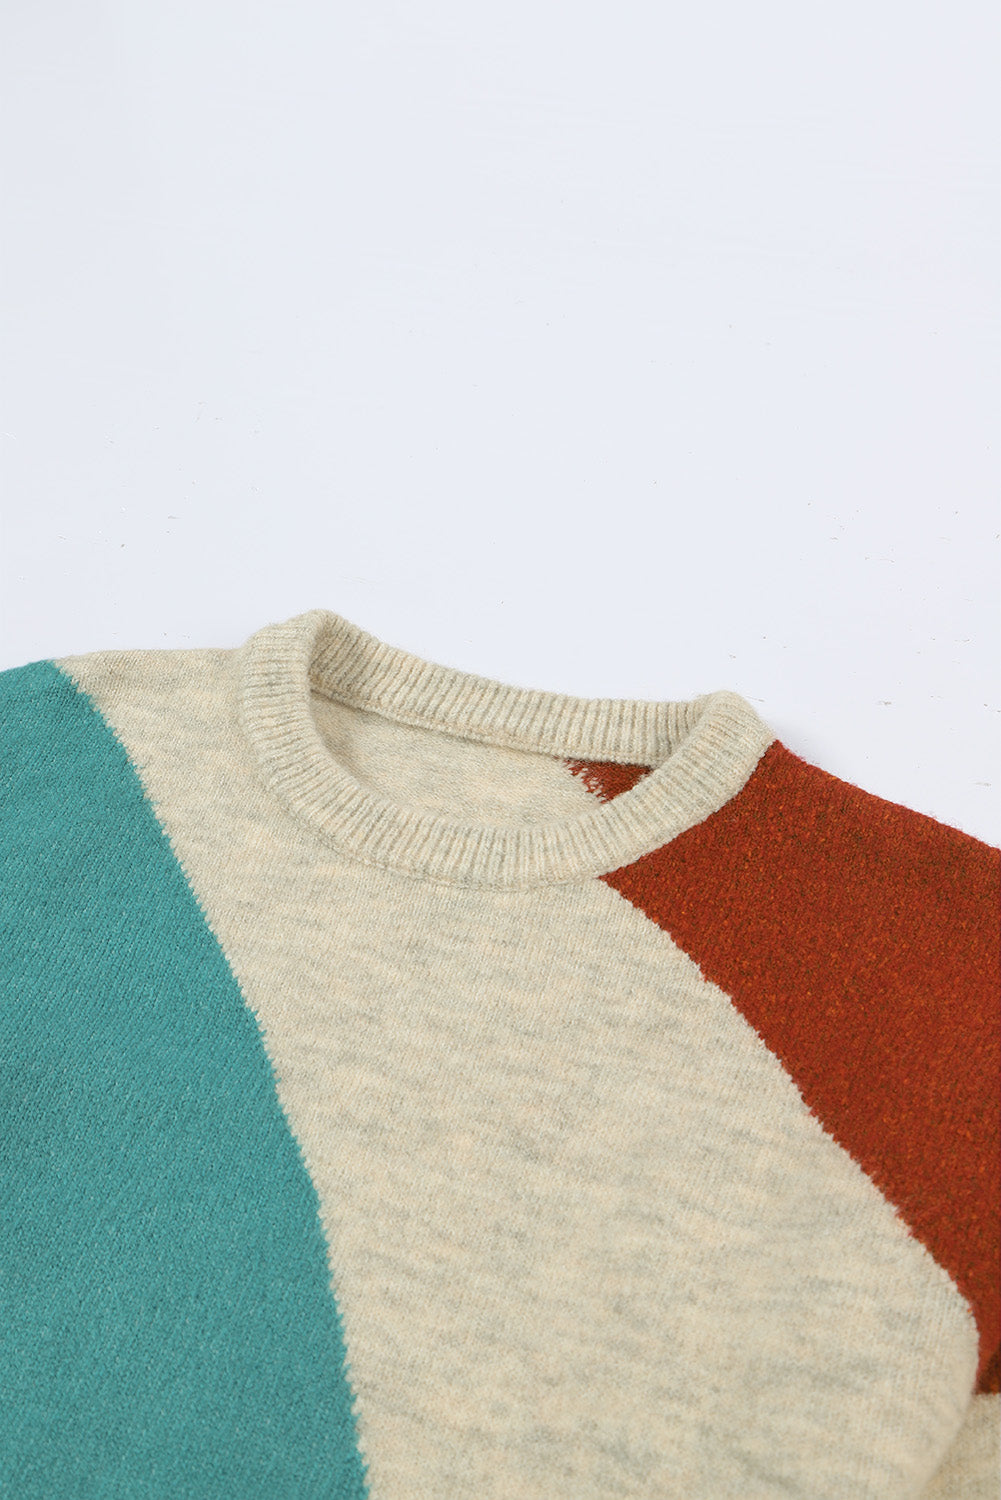 Grauer Colorblock-Pullover mit geripptem Rand und Rundhalsausschnitt